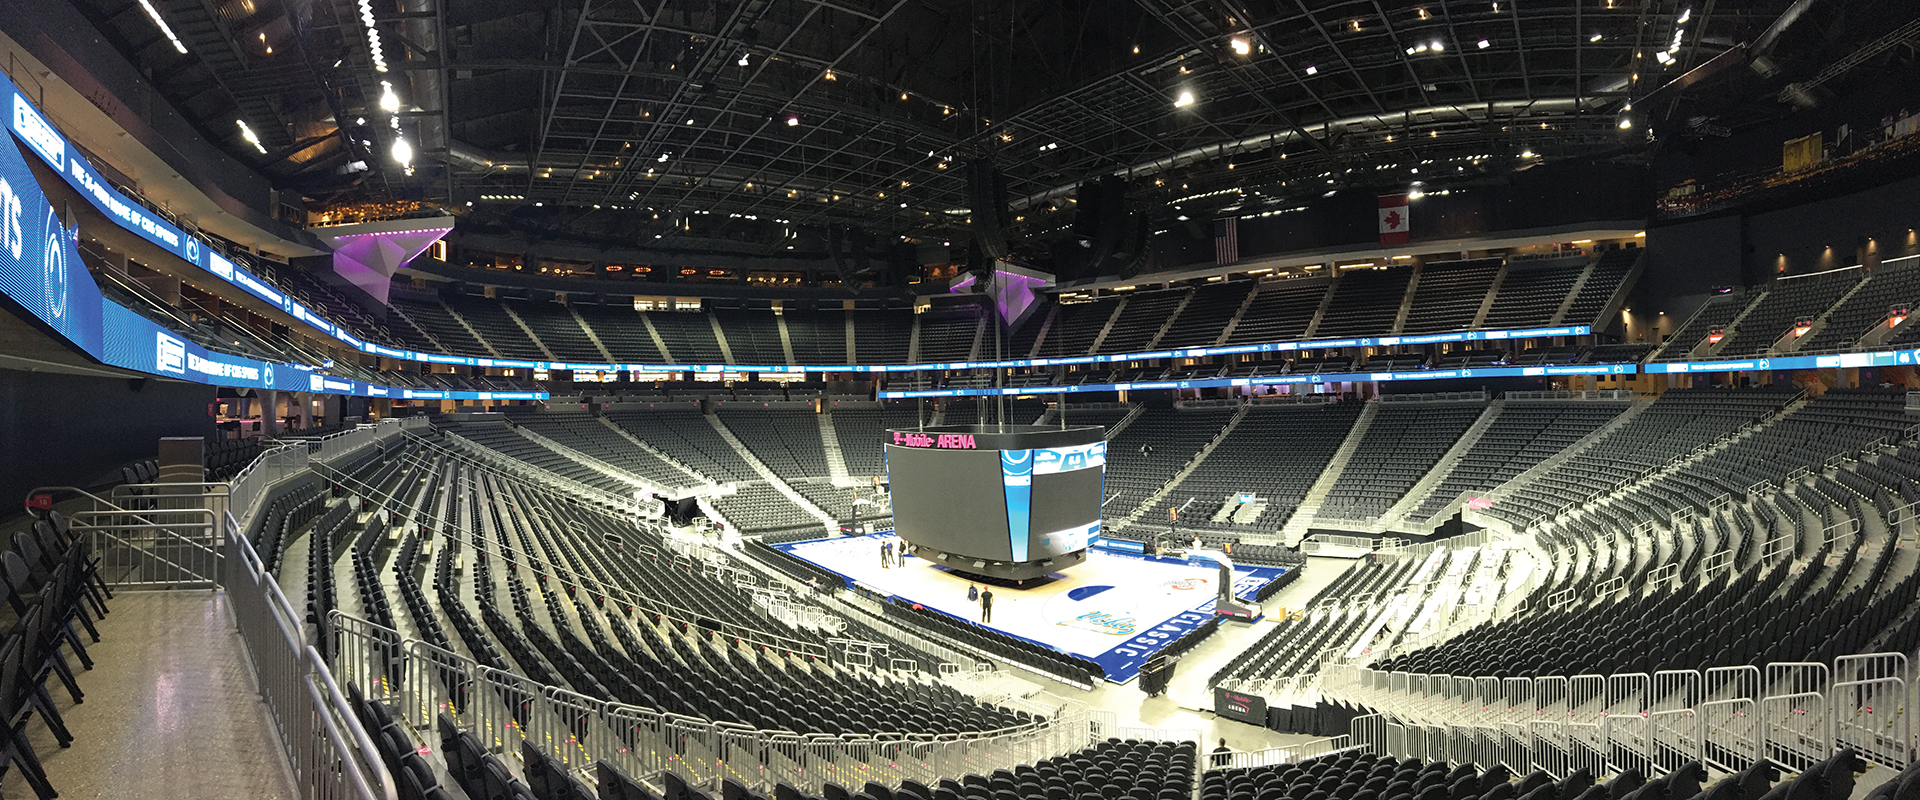 T-Mobile Arena in Las Vegas, NV